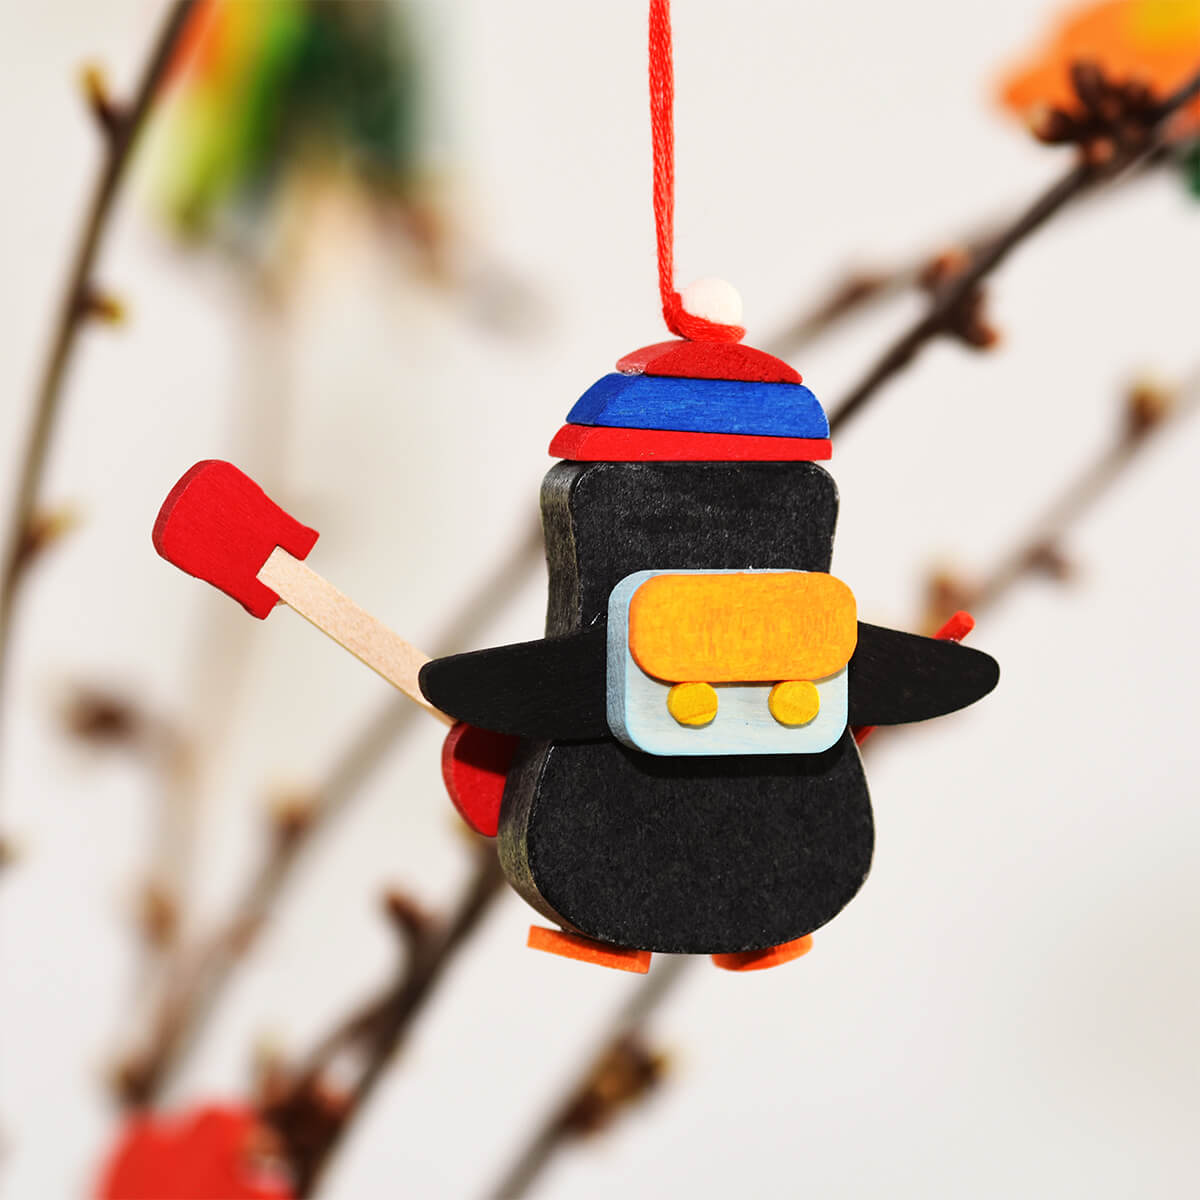 Pinguin als Baumschmuck mit Palette